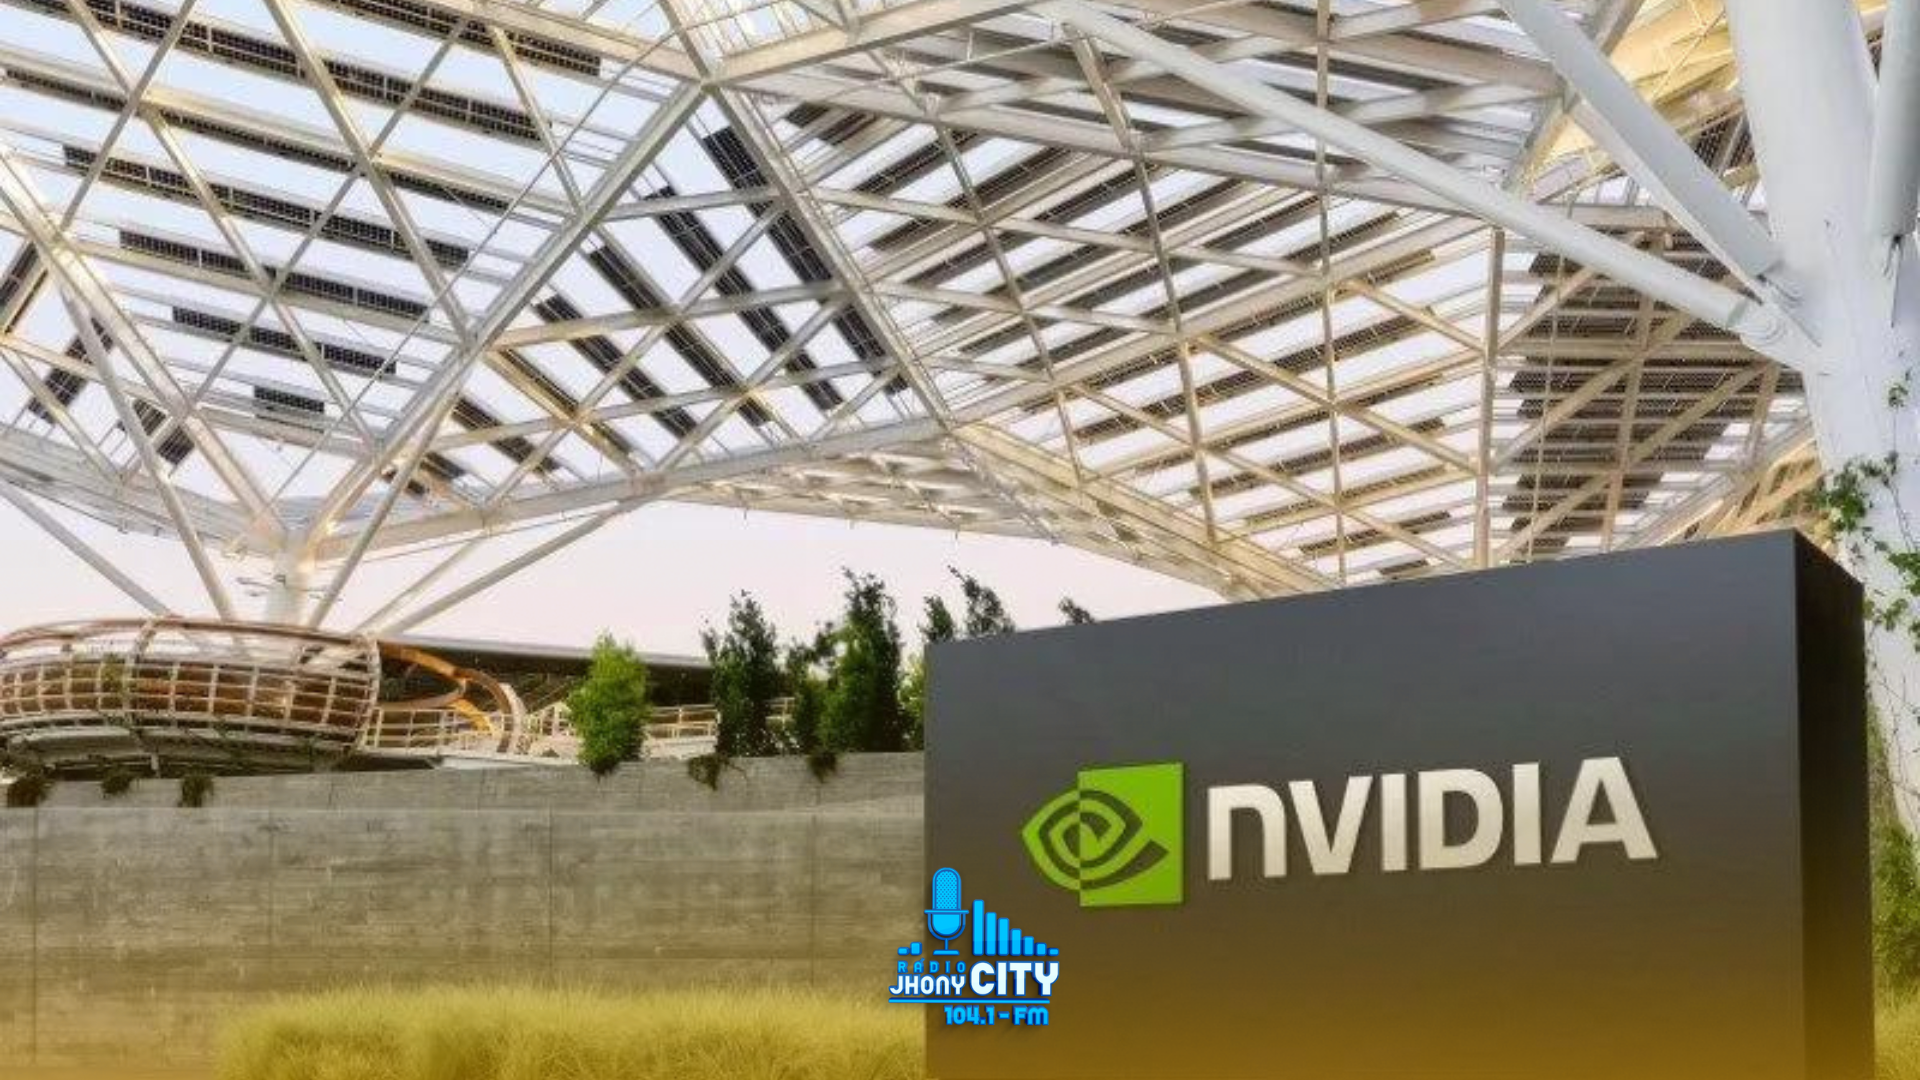 "Após ultrapassar a Apple, Nvidia se torna a segunda empresa mais valiosa do mundo."